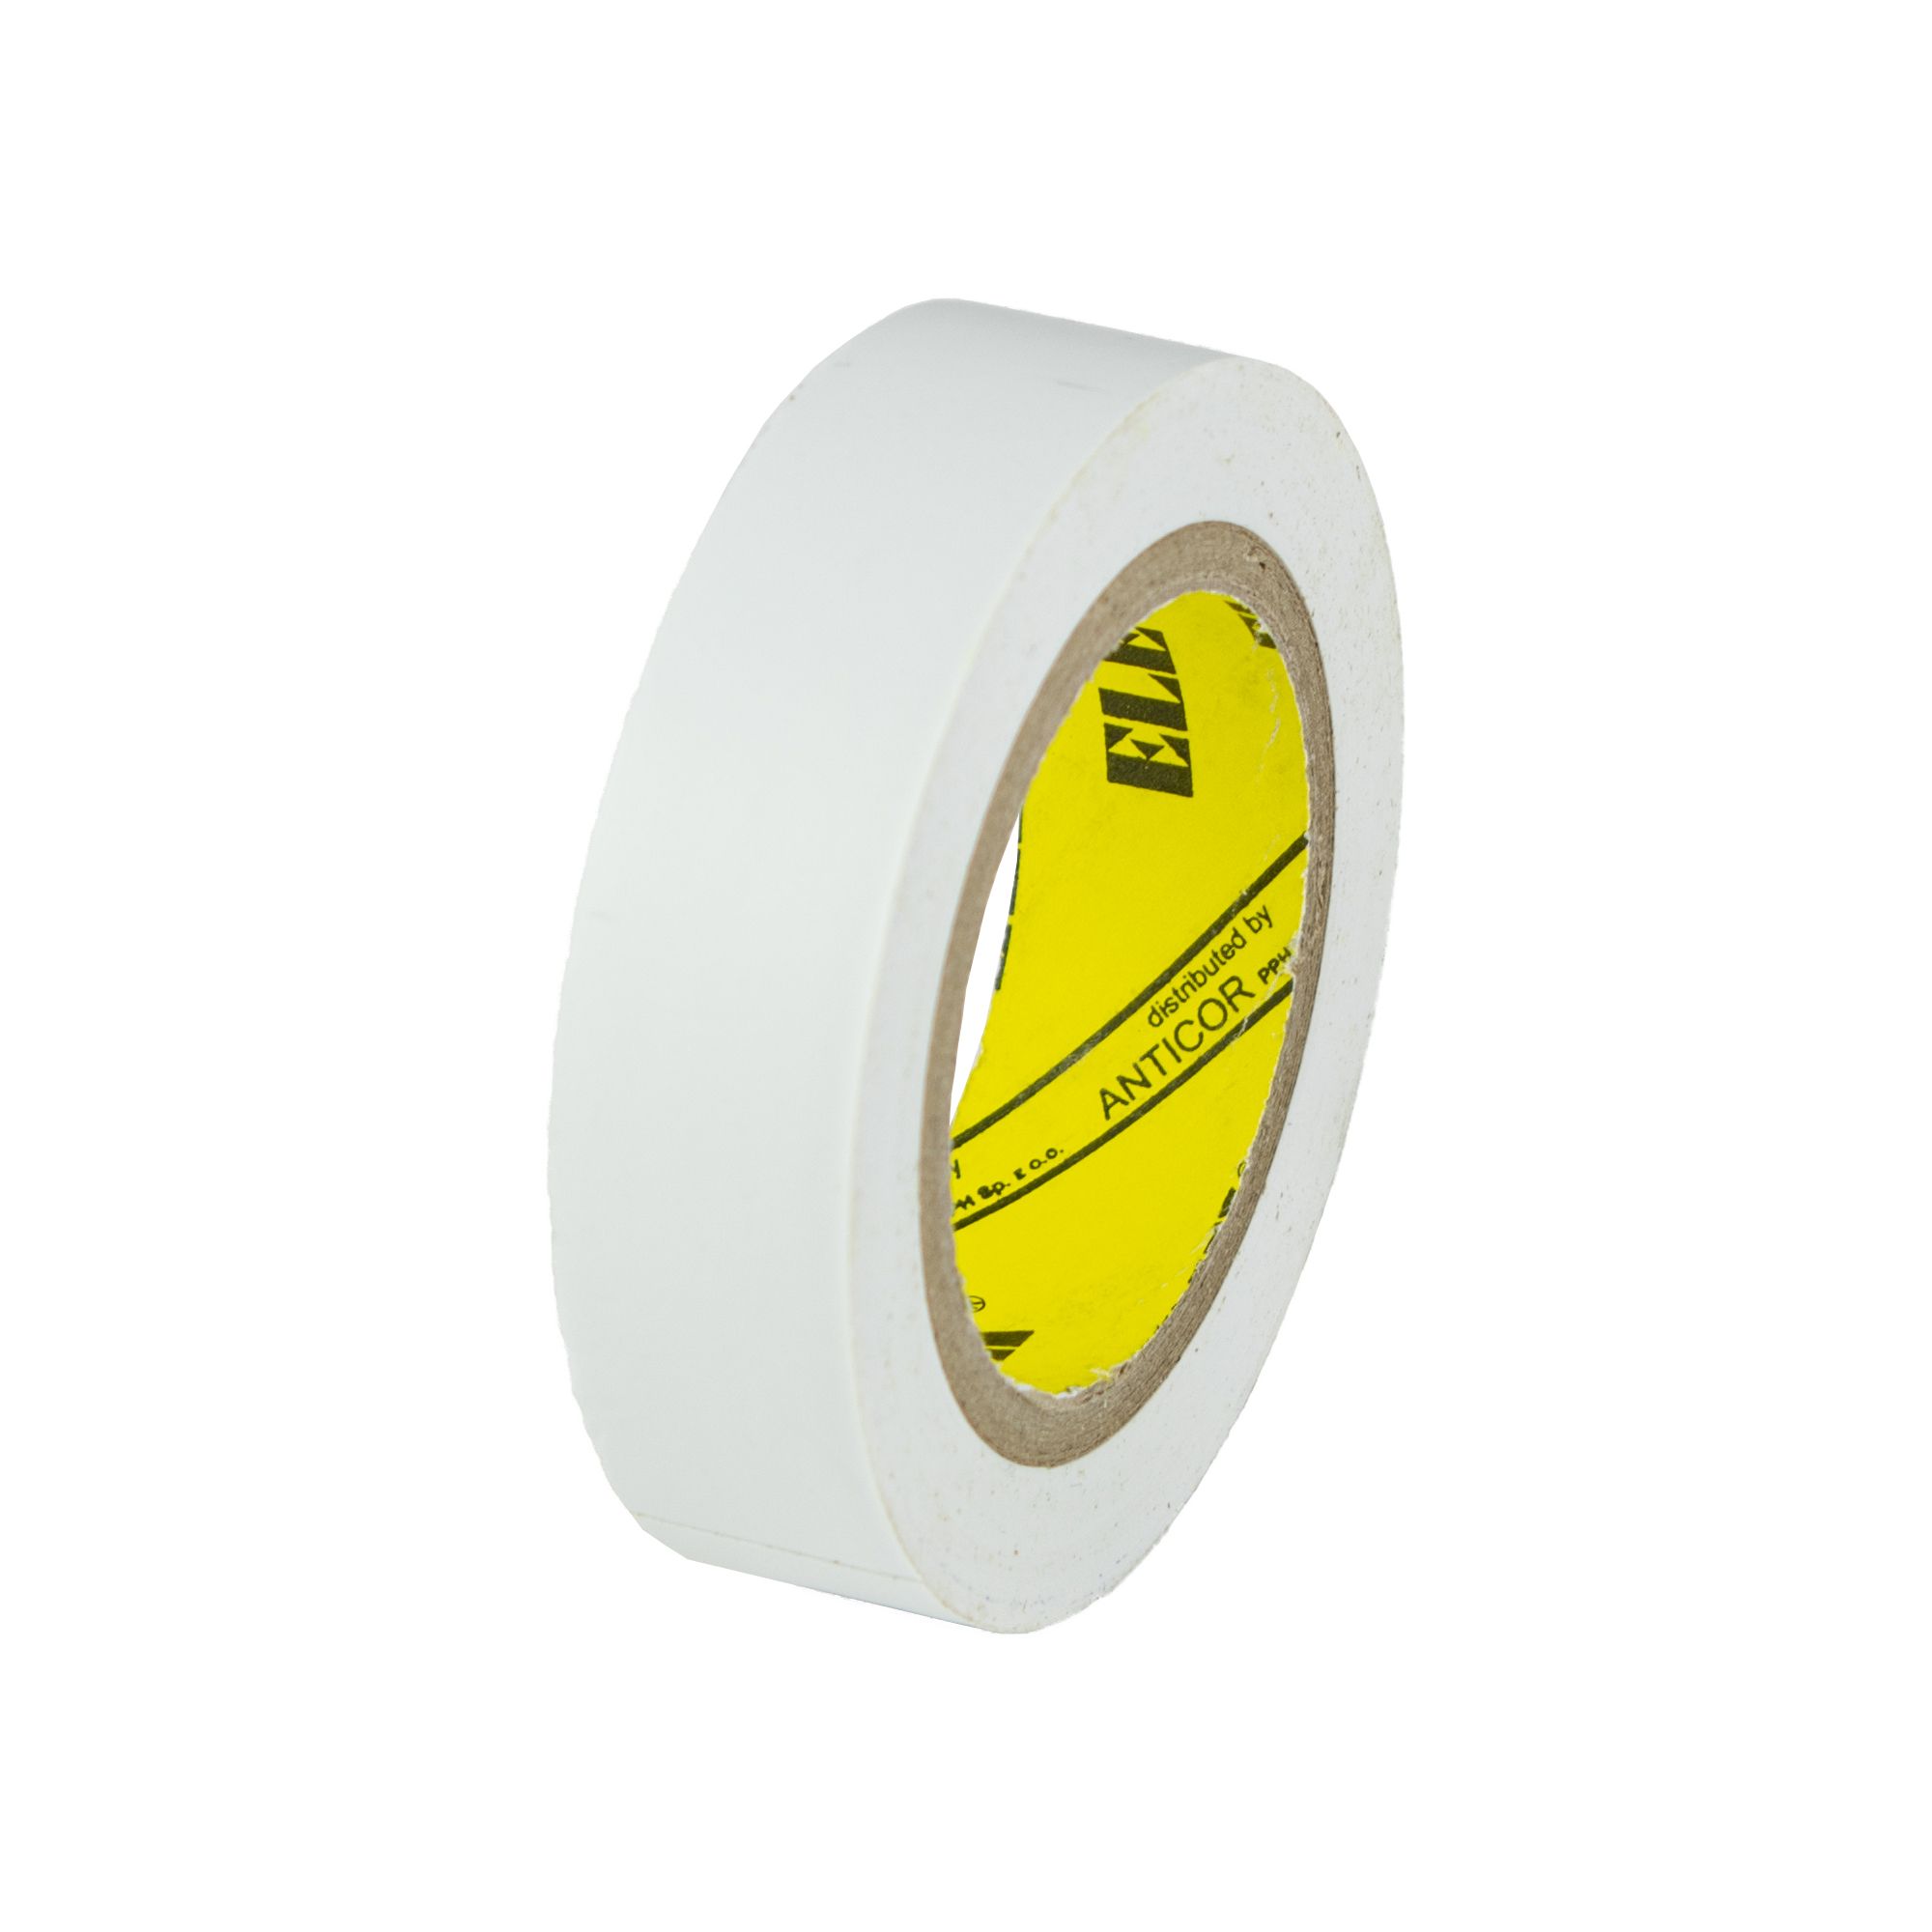 Izolační páska PVC 15mm / 10m, bílá 211 0.028 Kg ŽELEZÁŽŘSTVÍ Sklad4 KB- V9511